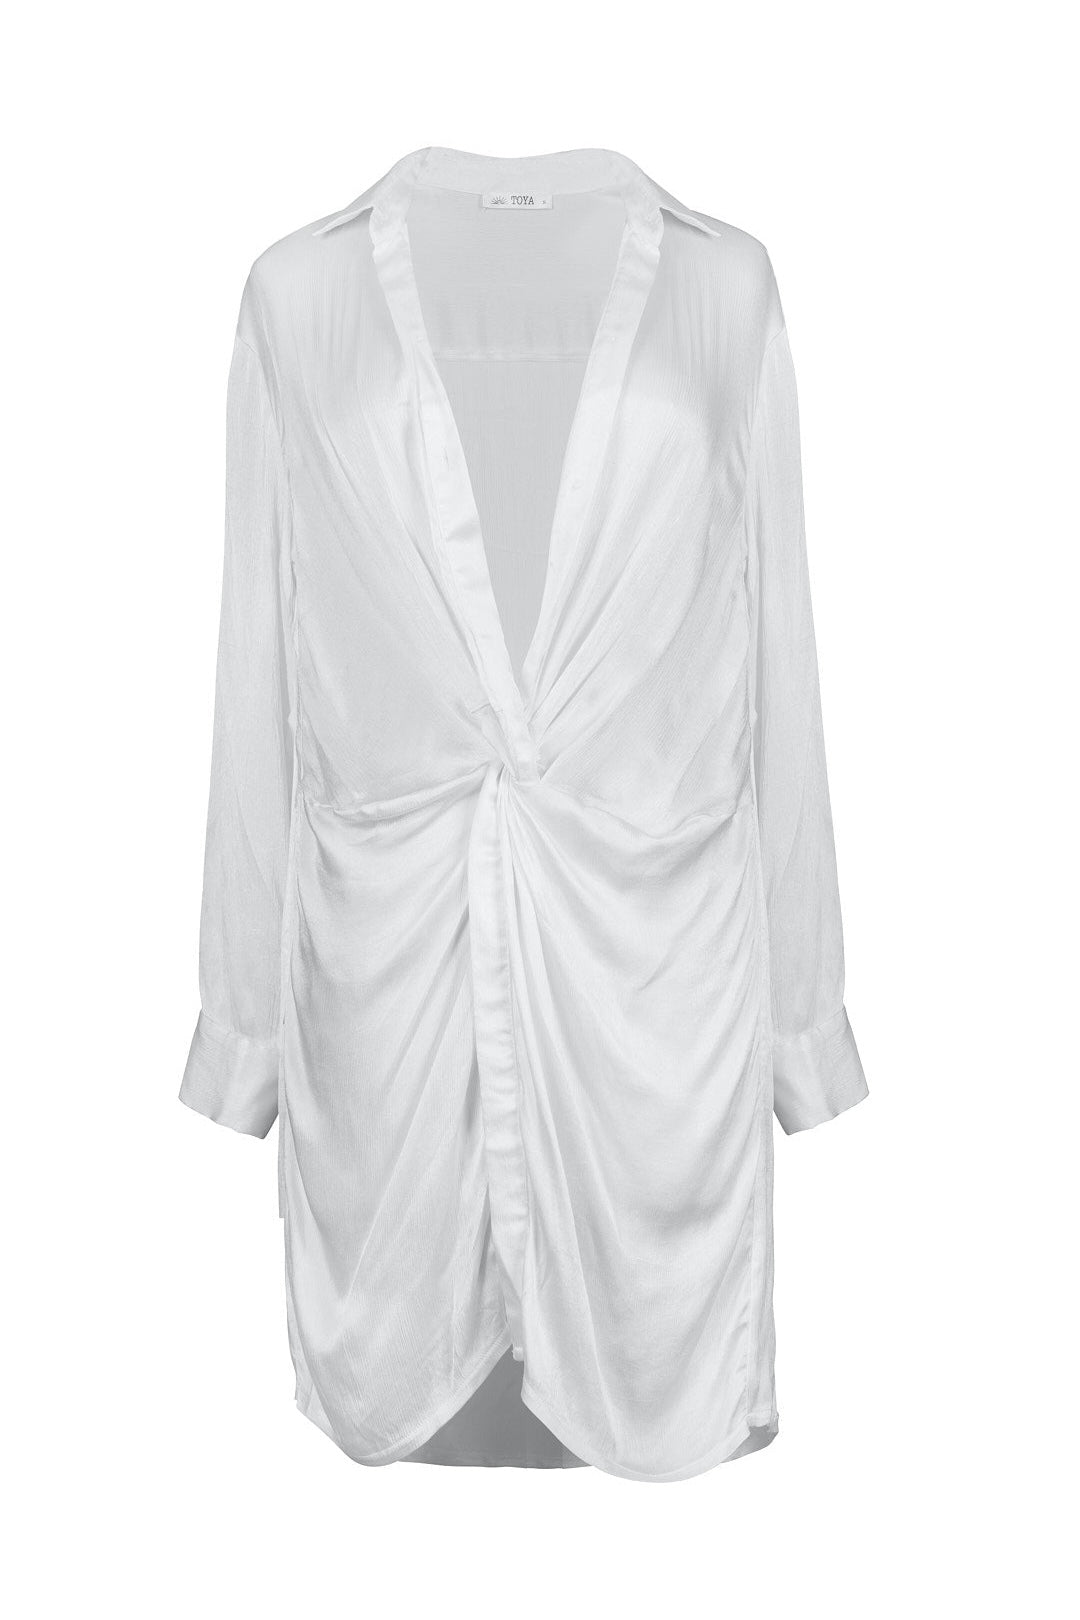 שמלת נייס צבע לבן- NICE DRESS COLOR WHITE